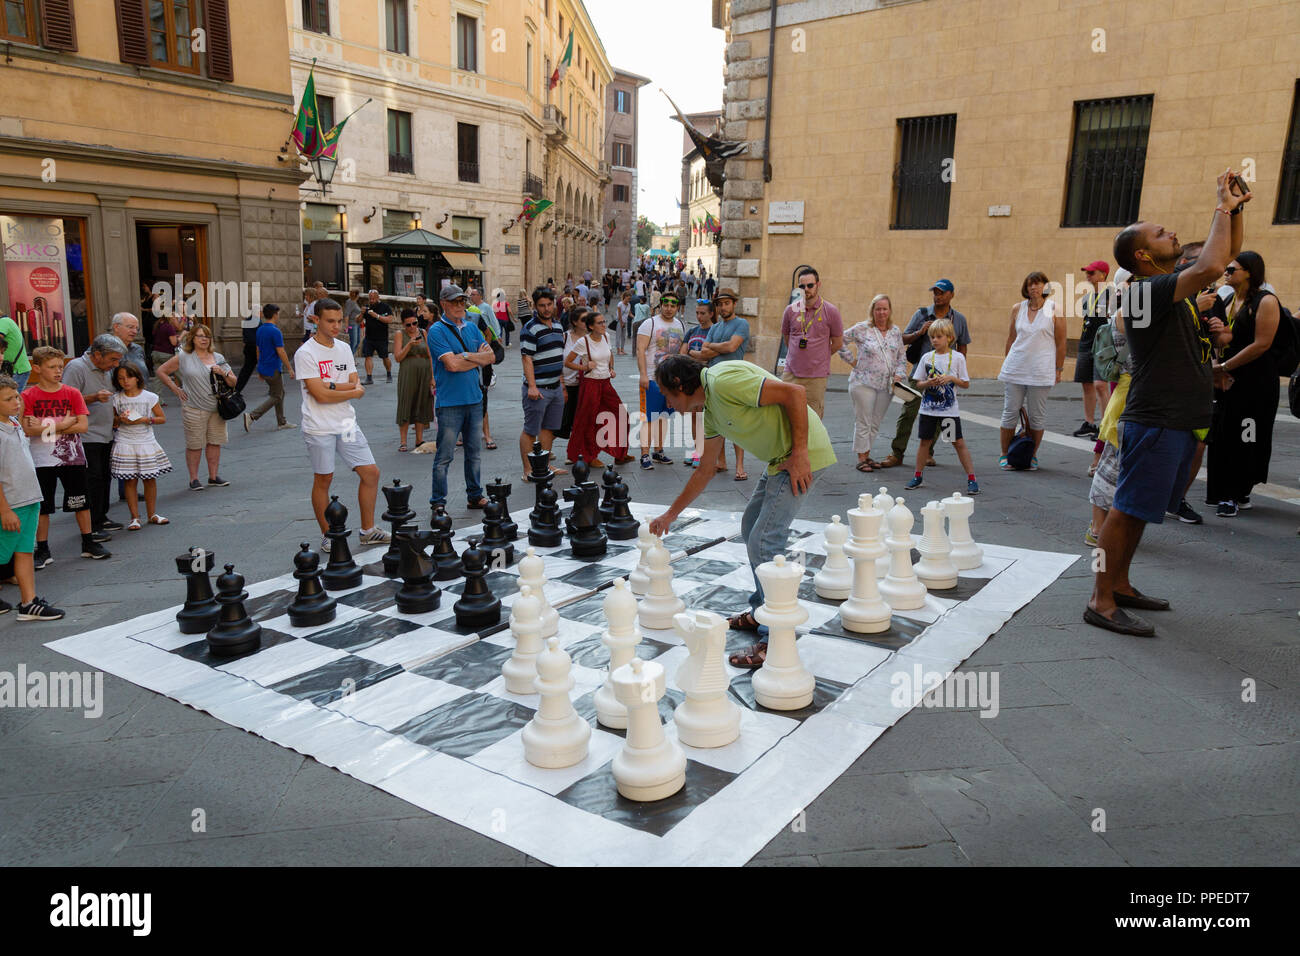 Personnes jouant aux échecs en plein air sur un échiquier géant, Piazza Salimbeni, Sienne, Toscane Italie Europe Banque D'Images